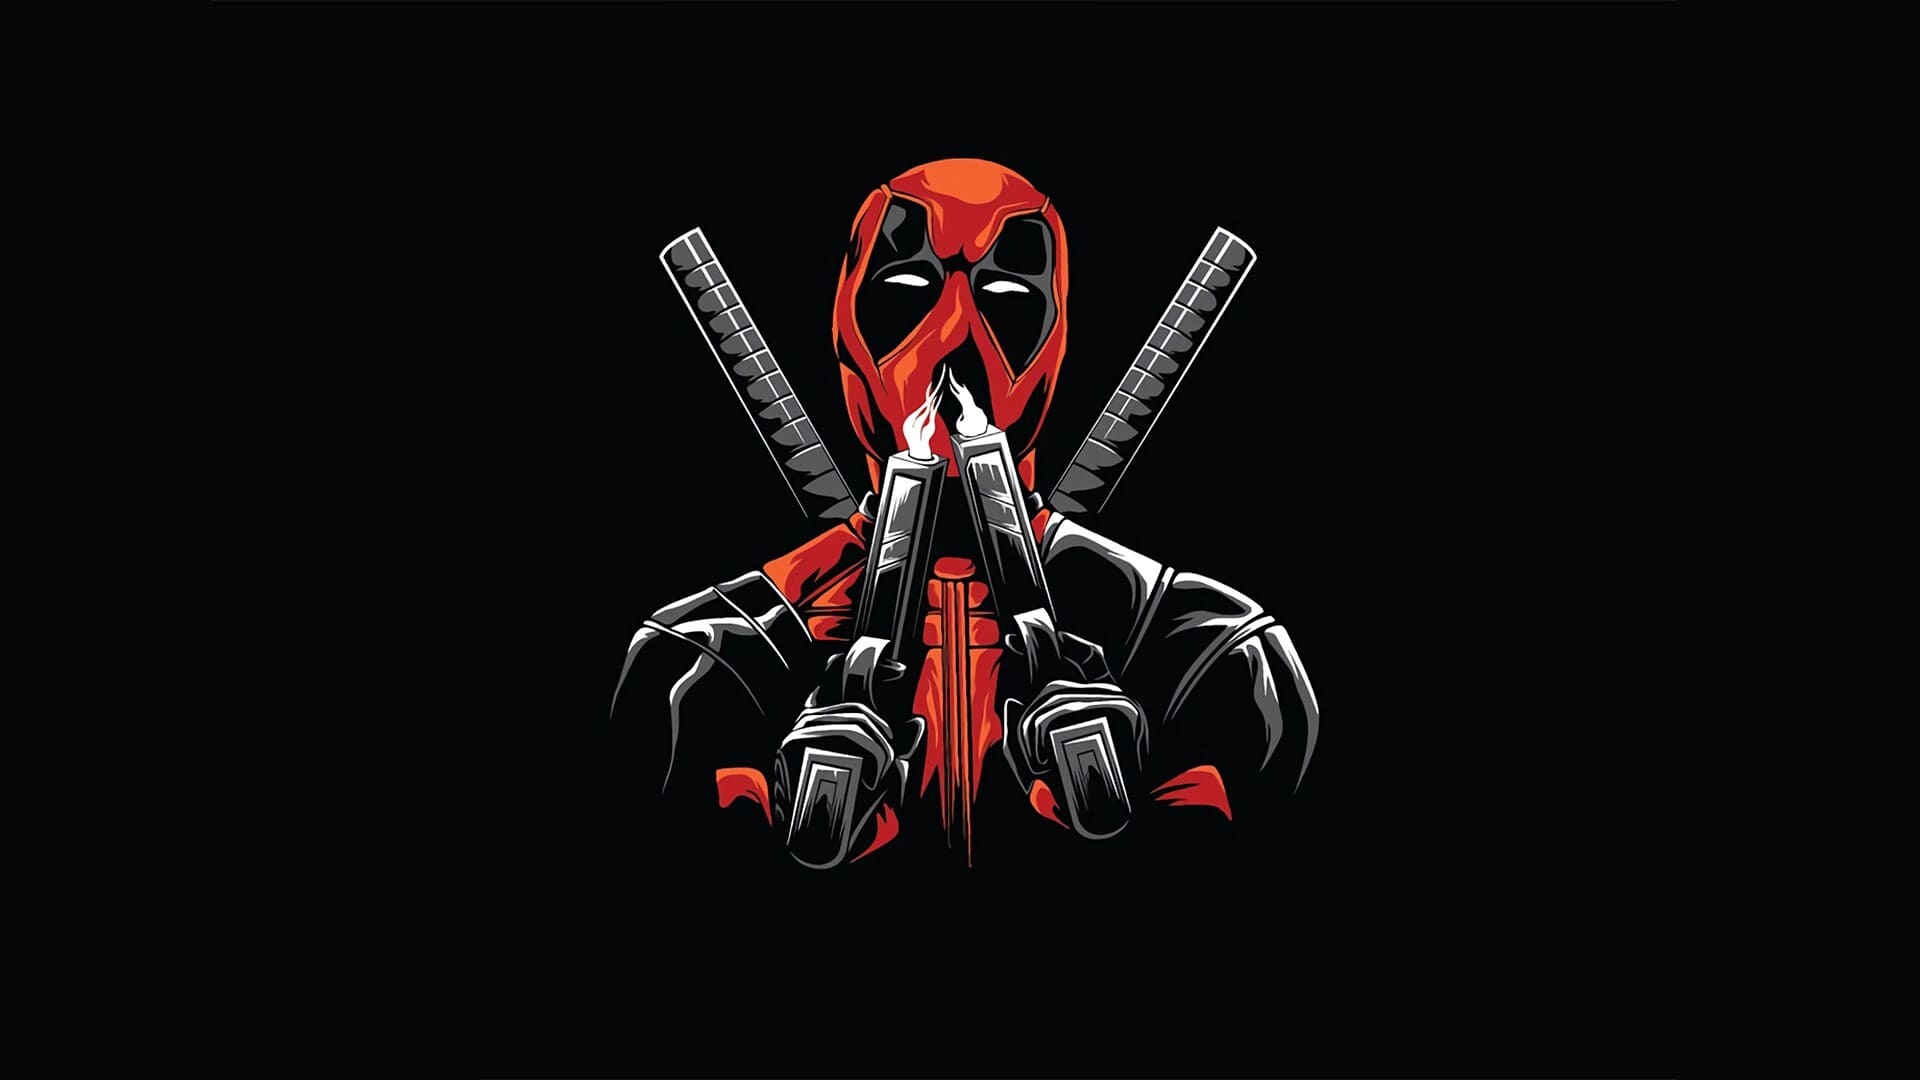 Deadpool Wallpapers - Top 35 Best Deadpool Backgrounds Download